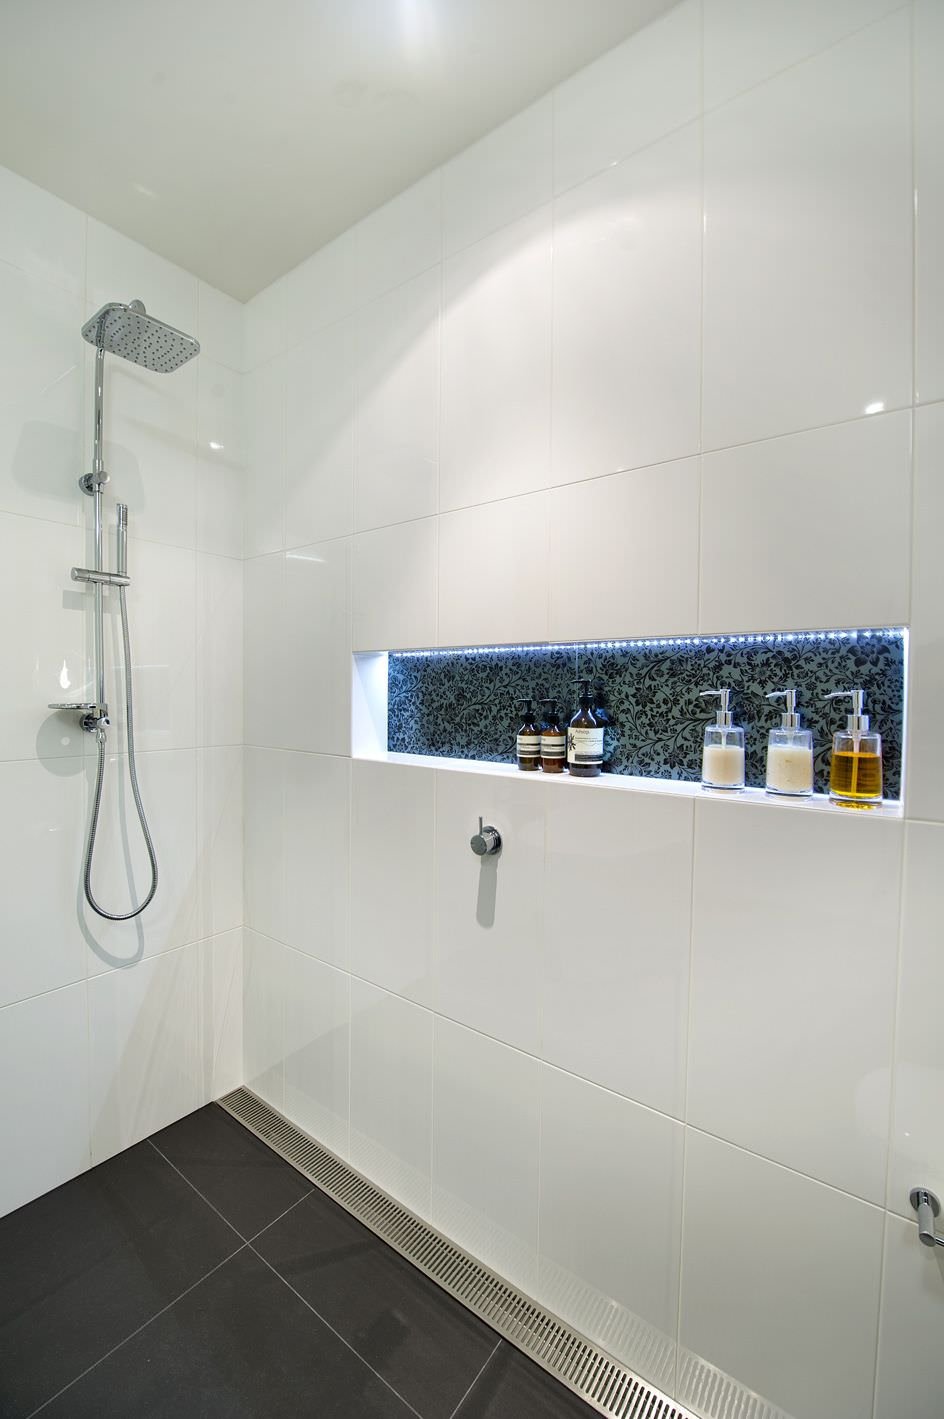 Idea per ristrutturazione bagno moderno con nicchia creata sulla parete della doccia. Rivestimento in ceramica bianca di grandi dimensioni, nicchia illuminata creata con piastrelle motivo floreale.